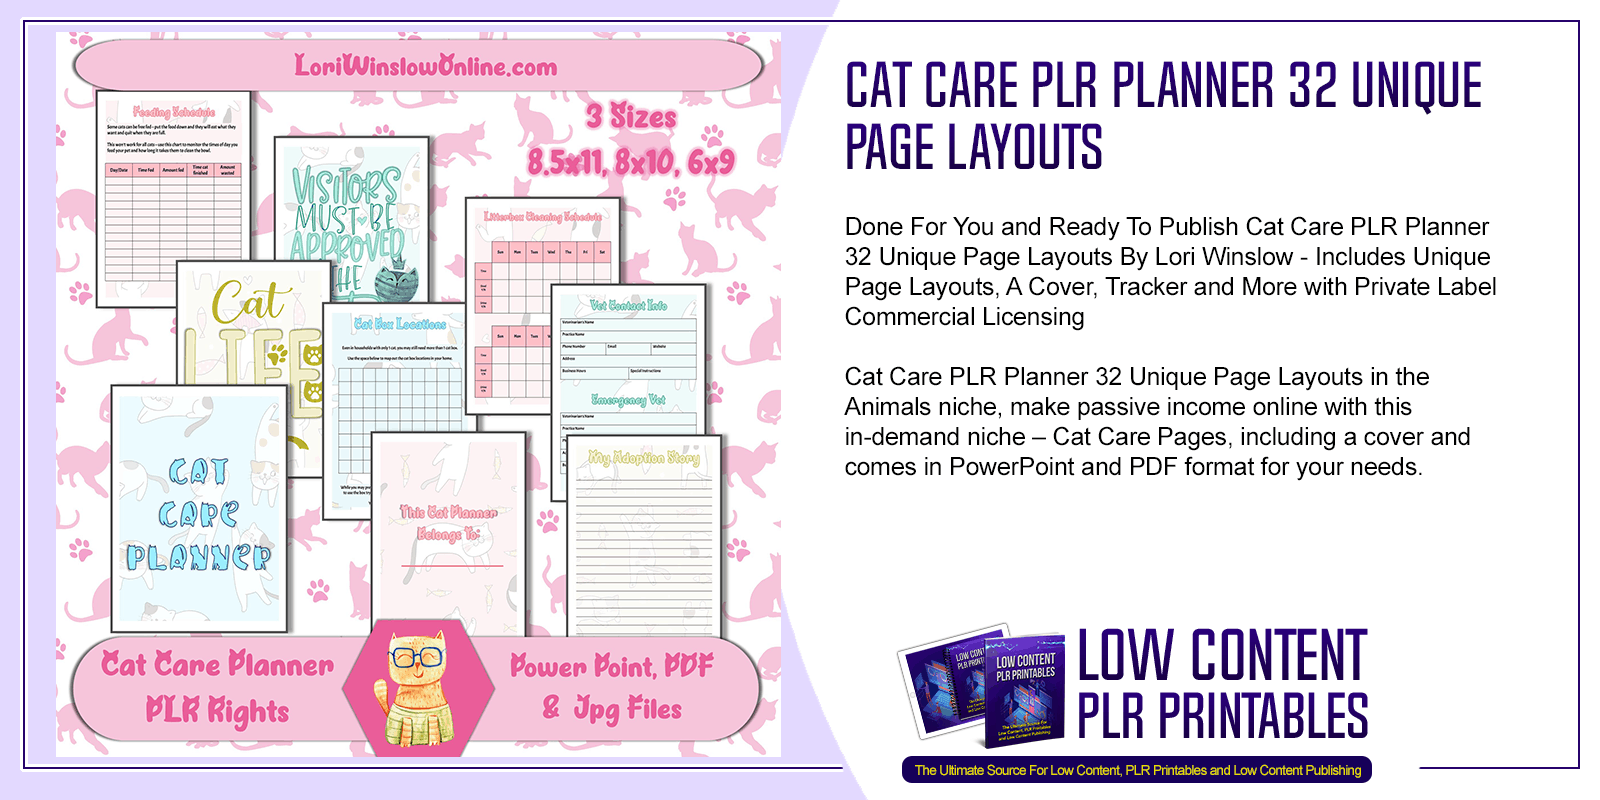 Cat Care PLR Planner 32 Unique Page Layouts